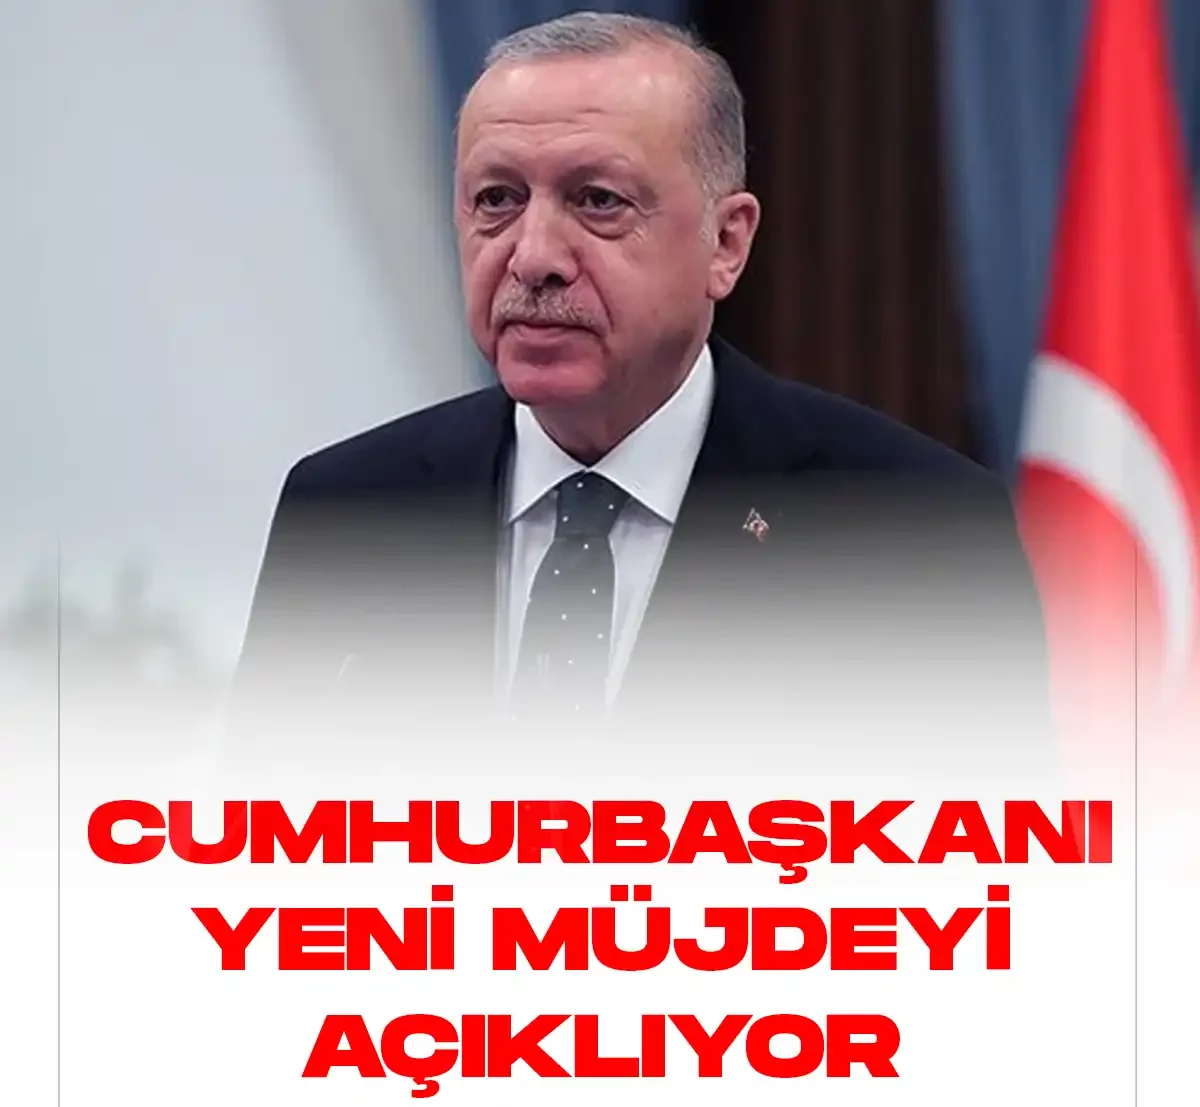 Cumhurbaşkanı Erdoğan yeni müjdeyi açıklıyor.